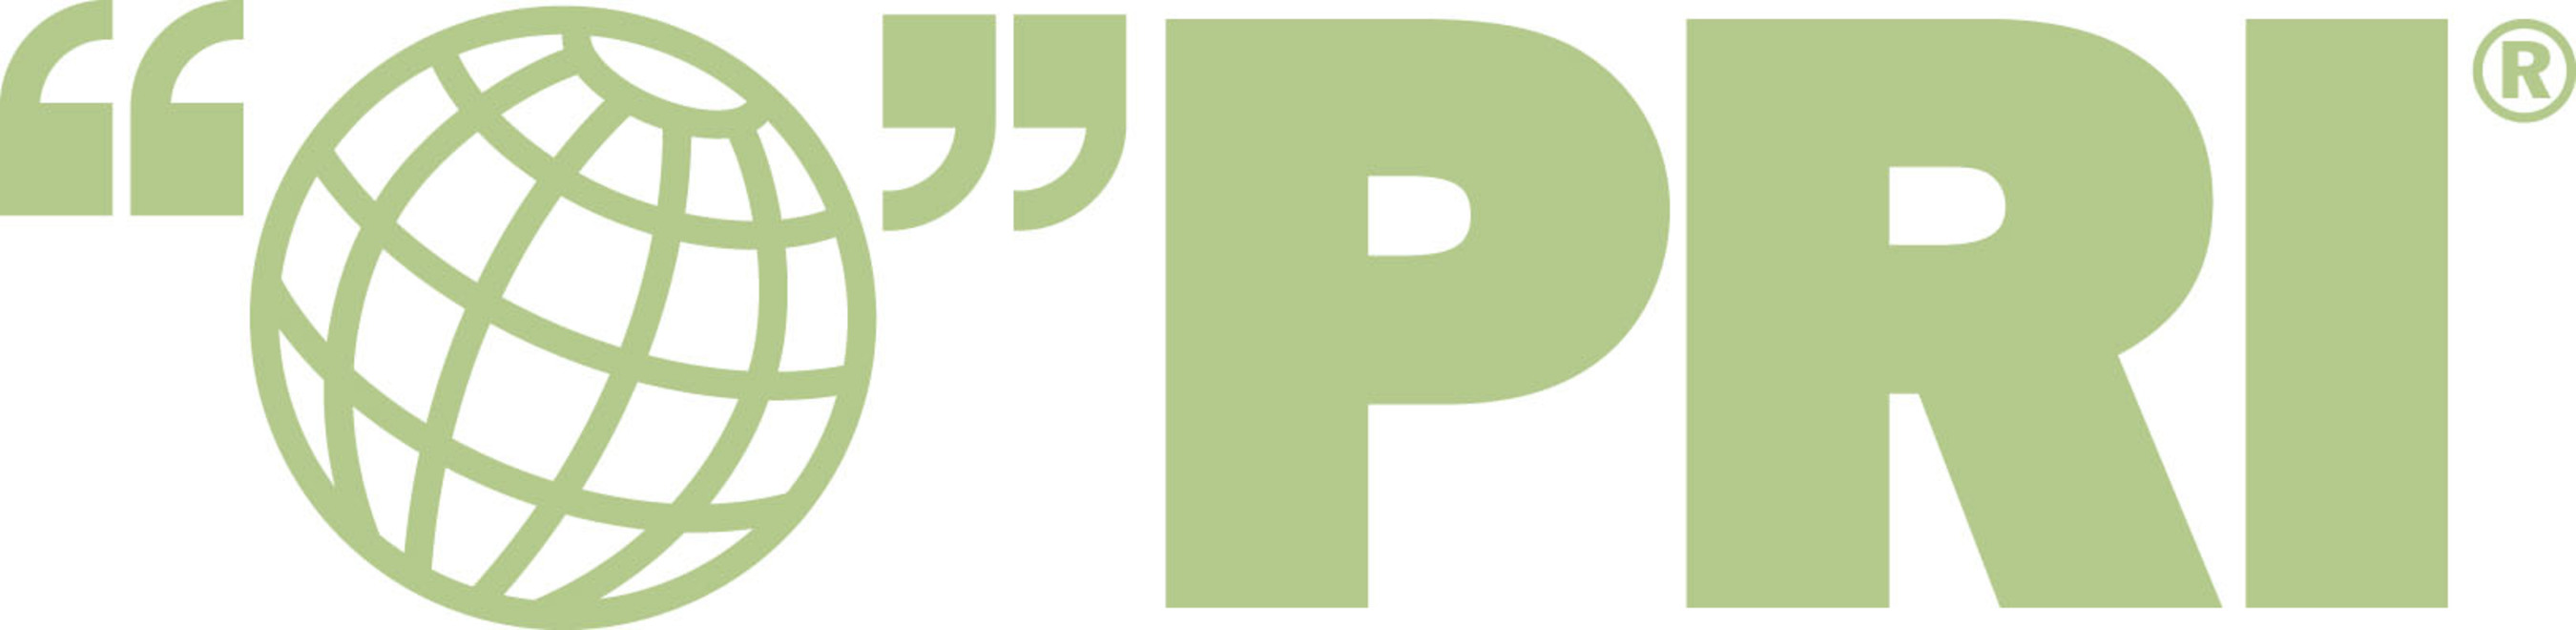 Public Radio International logo. (PRNewsFoto/Public Radio International) (PRNewsFoto/)